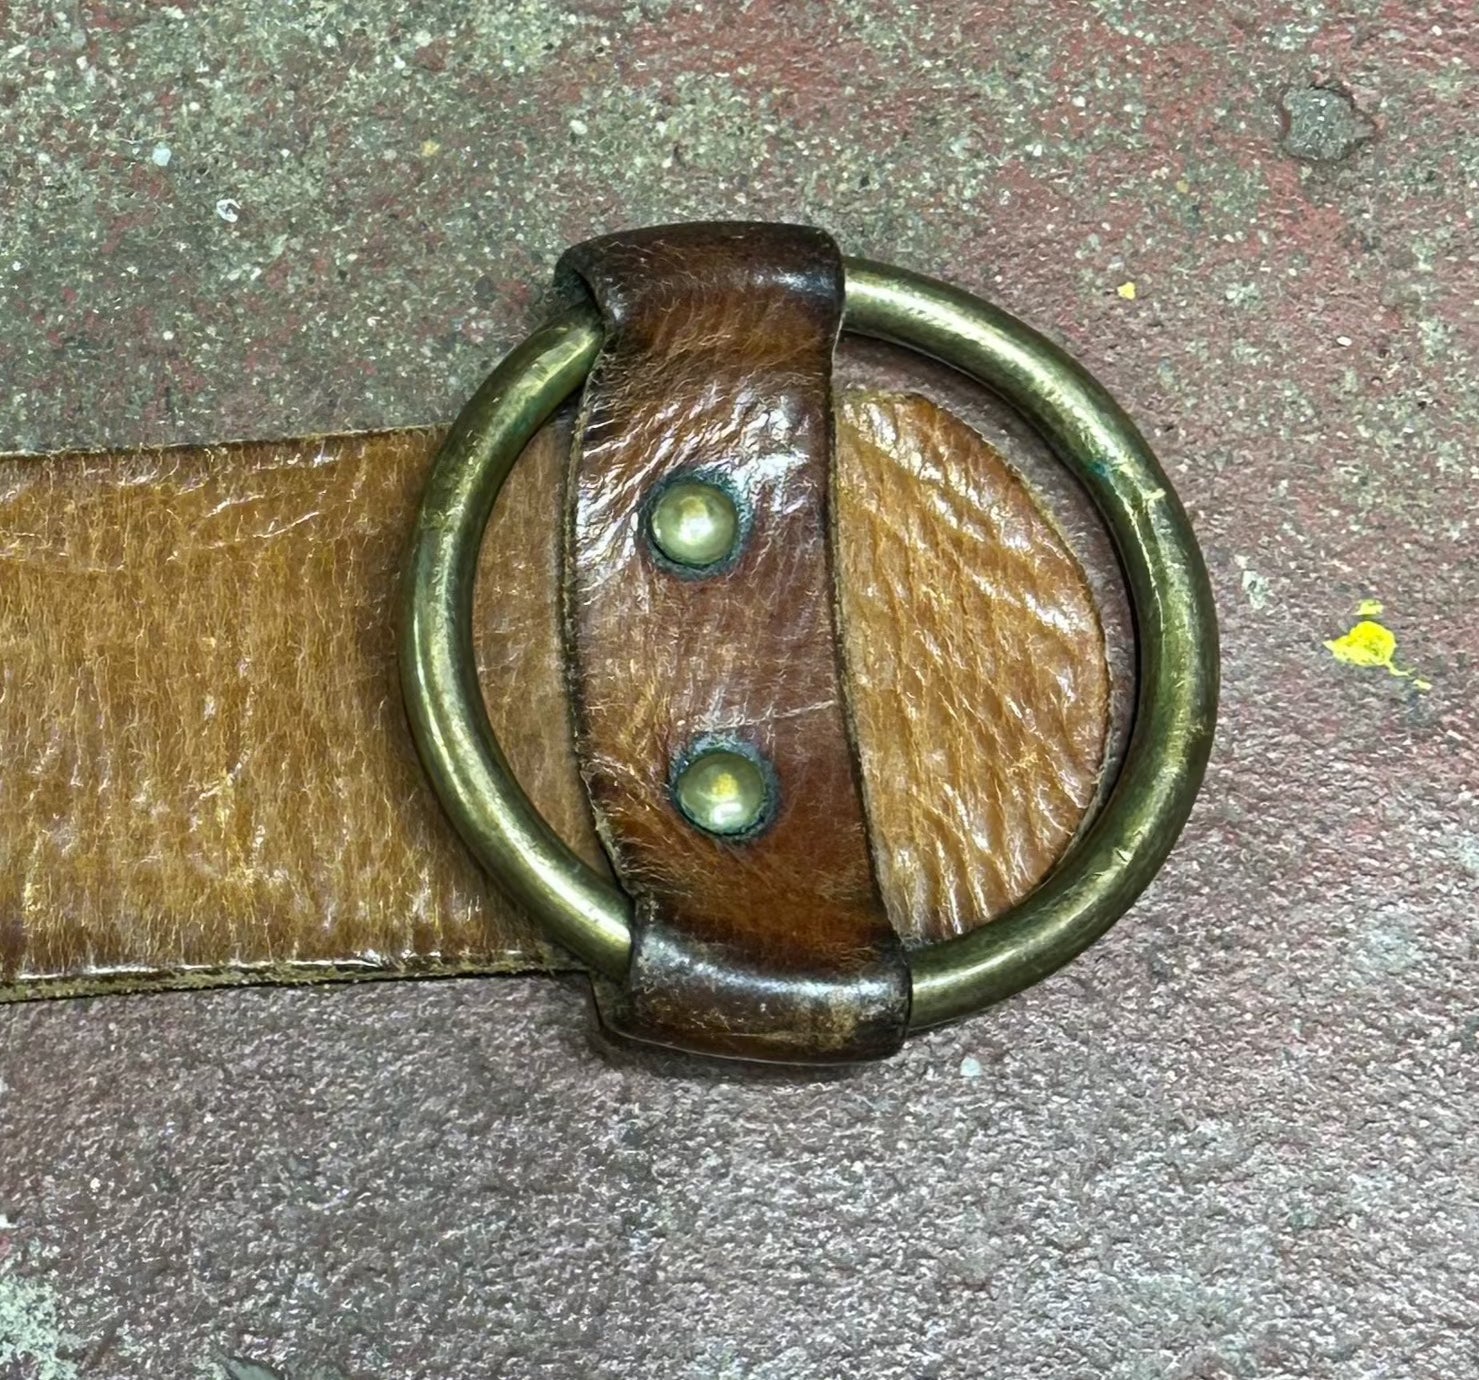 Vintage 70's Leather Ring Belt (JYJ-227)